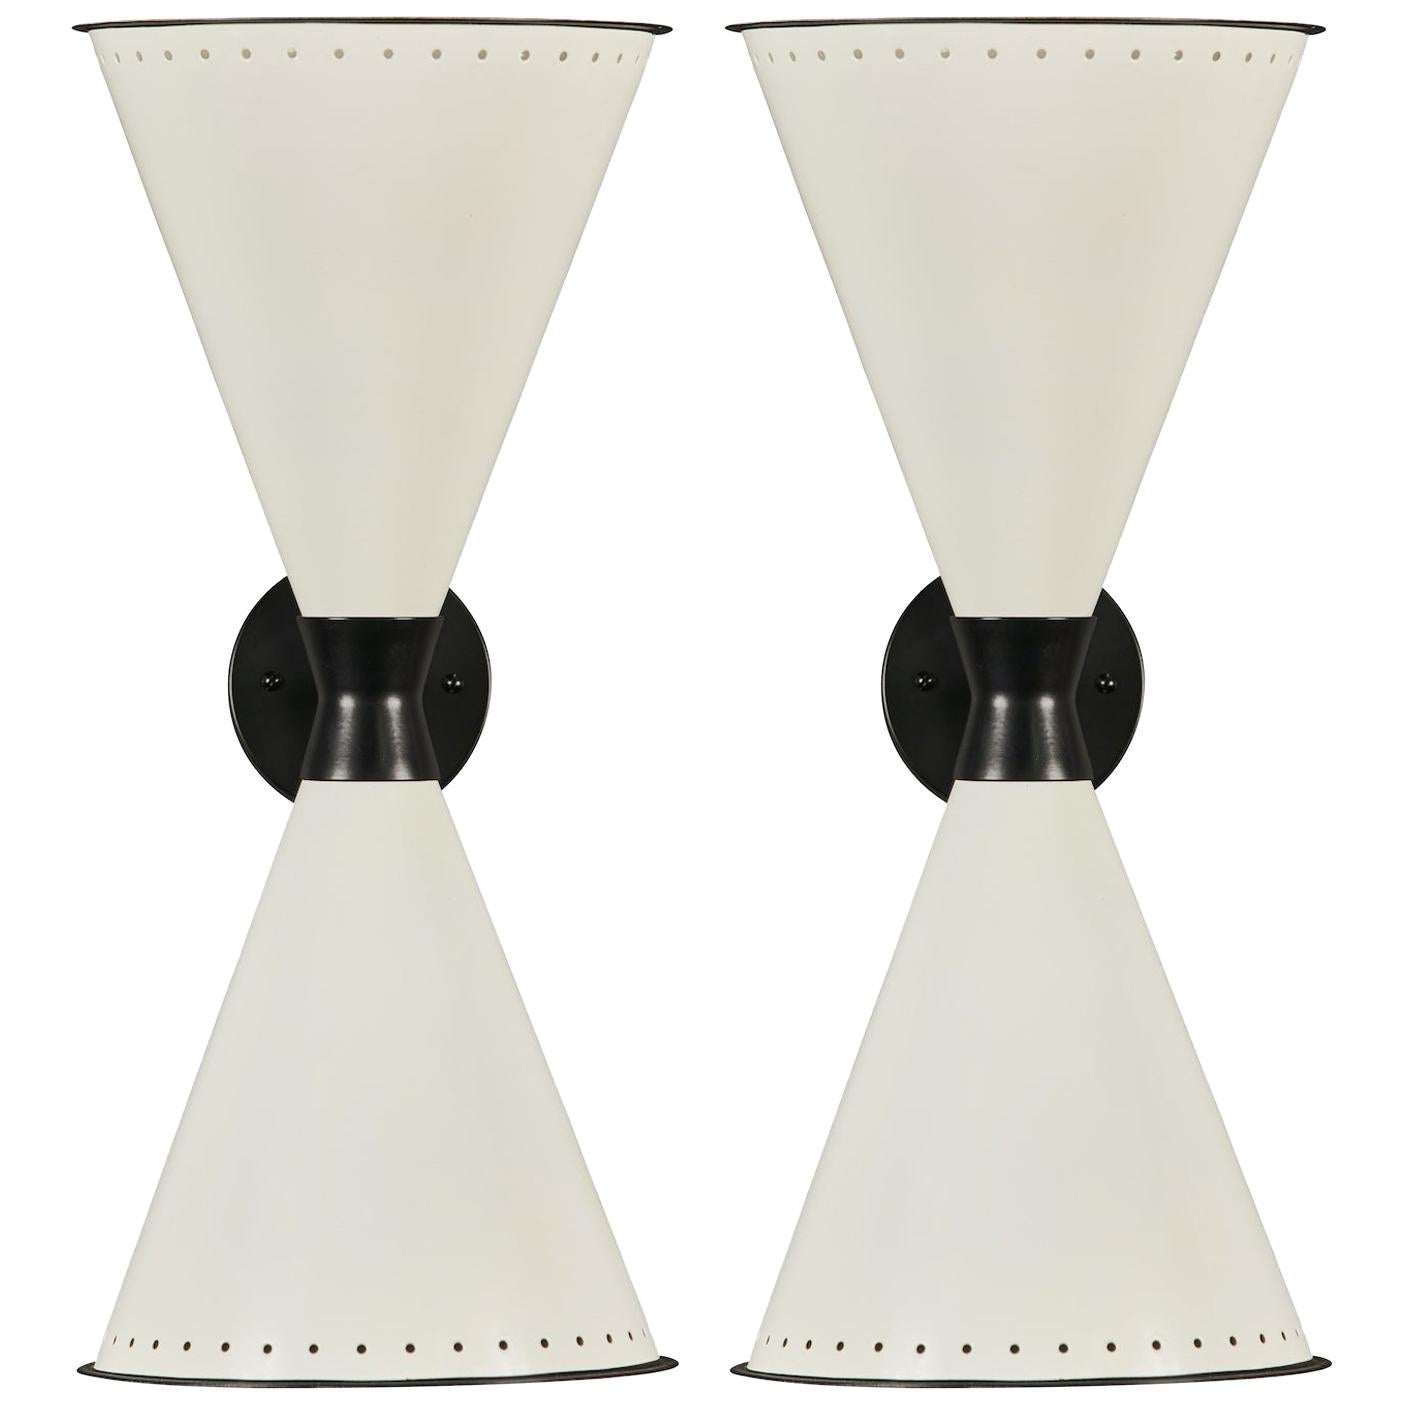 L'applique monumentale à double cône perforé 'Diabolo' en blanc et noir. Fabriqué à la main à Los Angeles avec une attention scrupuleuse aux détails et aux matériaux. Exécuté dans des abat-jour en métal laqué de haute qualité, ce design